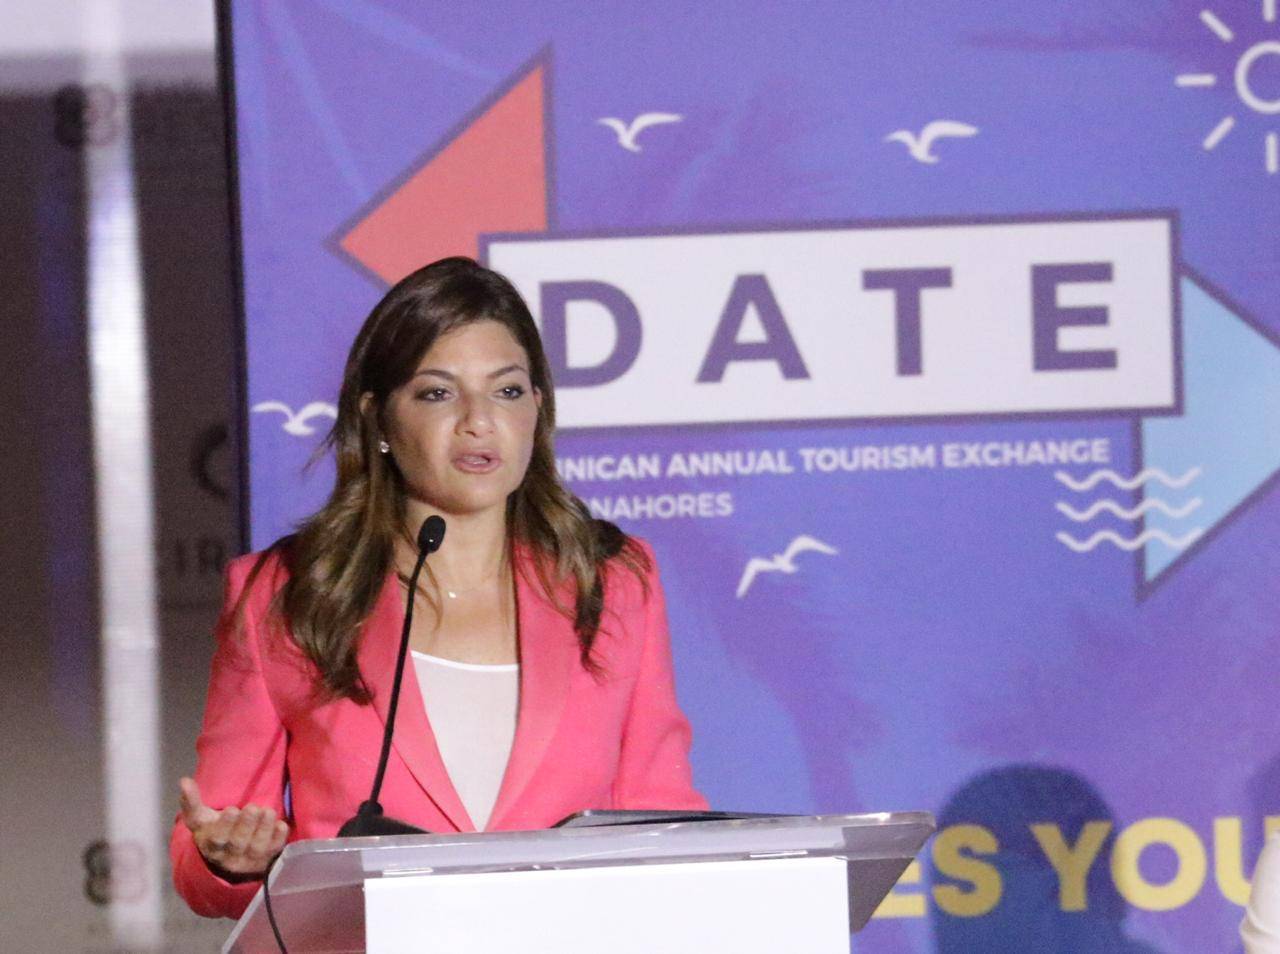 Asonahores propone alianza para incrementar flujo turístico